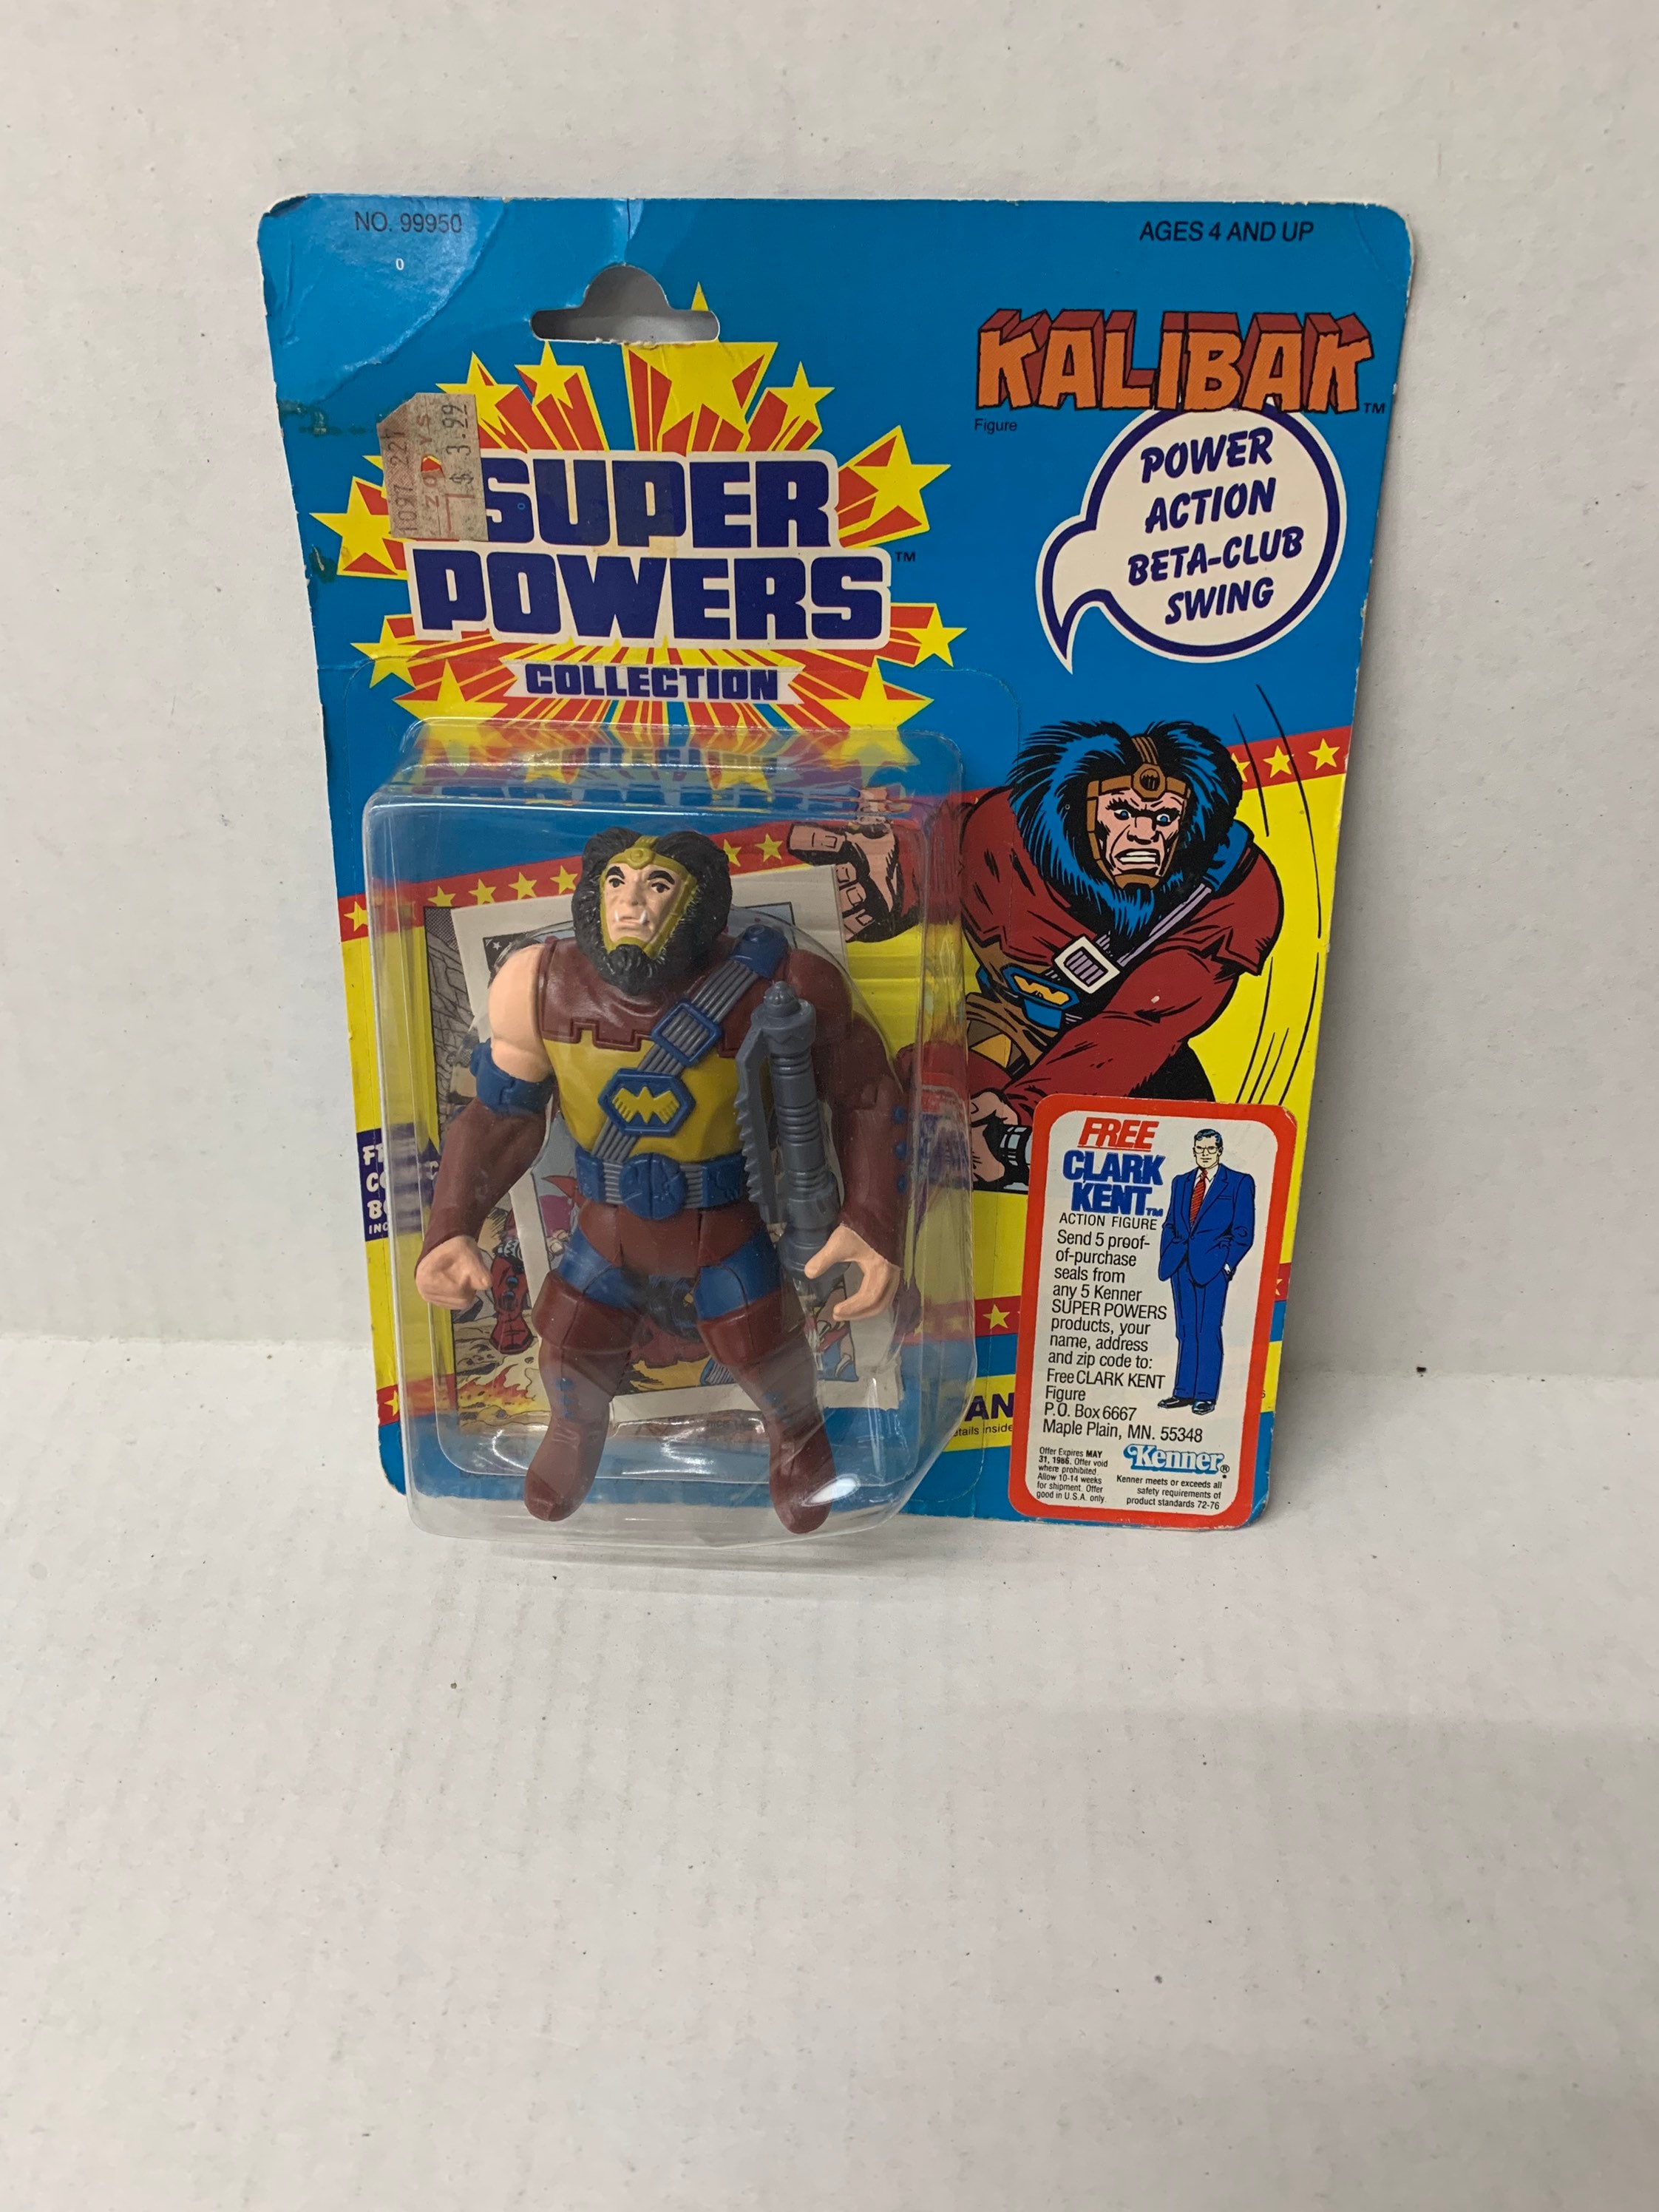 スーパーパワーズコレクション KALIBAK 1985年 GIJOE ケナー - アメコミ